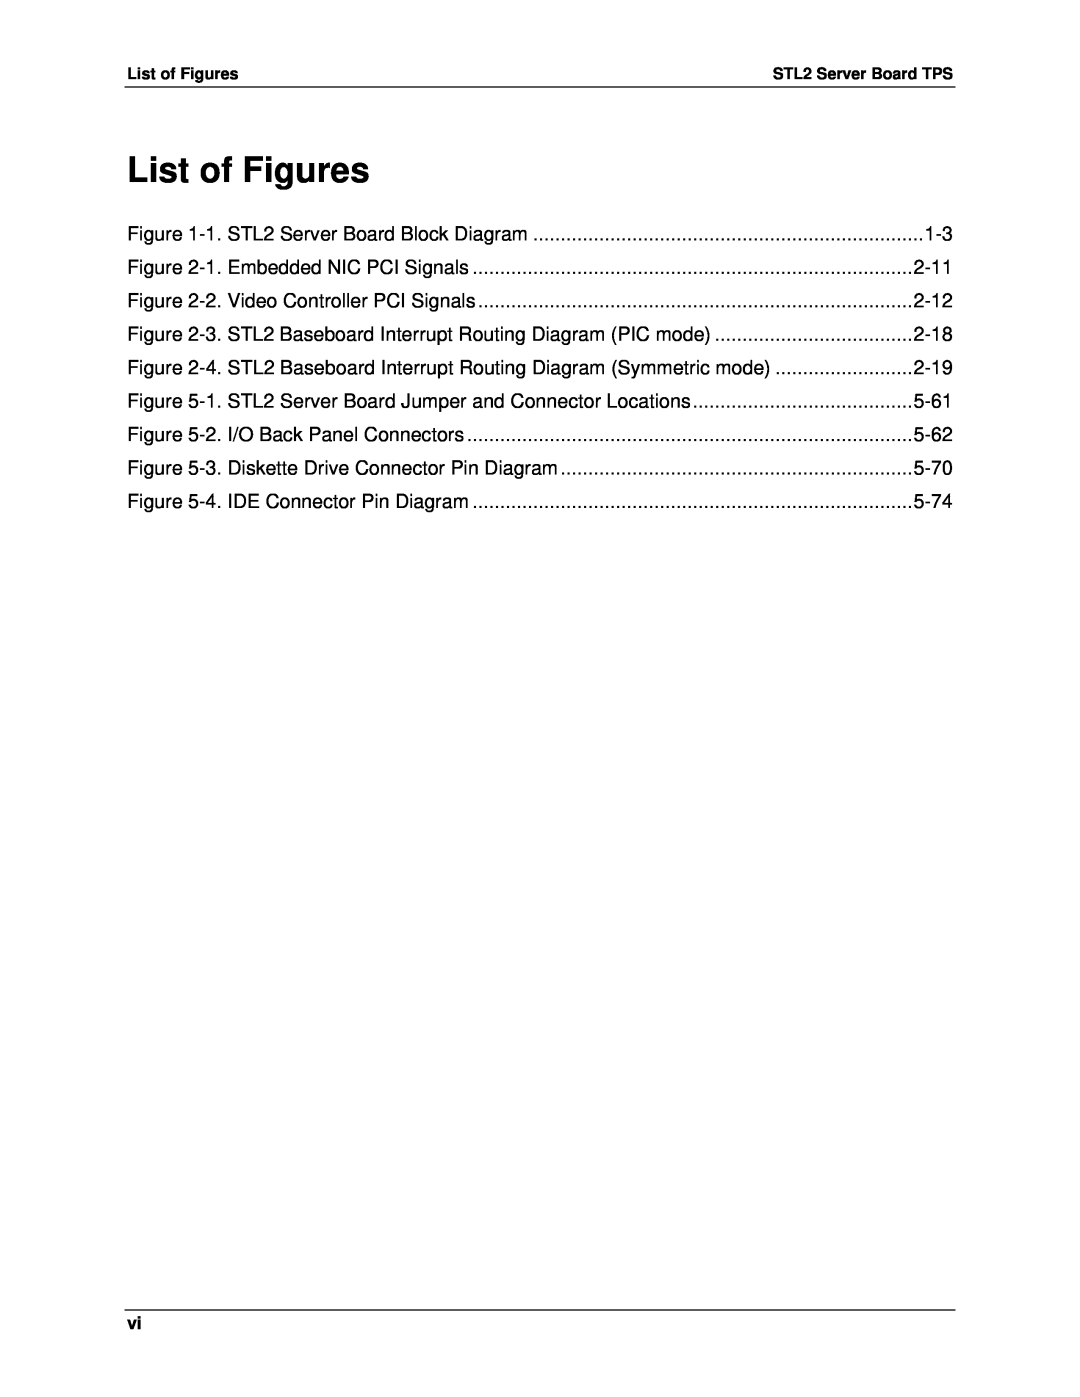 Intel STL2 manual List of Figures 